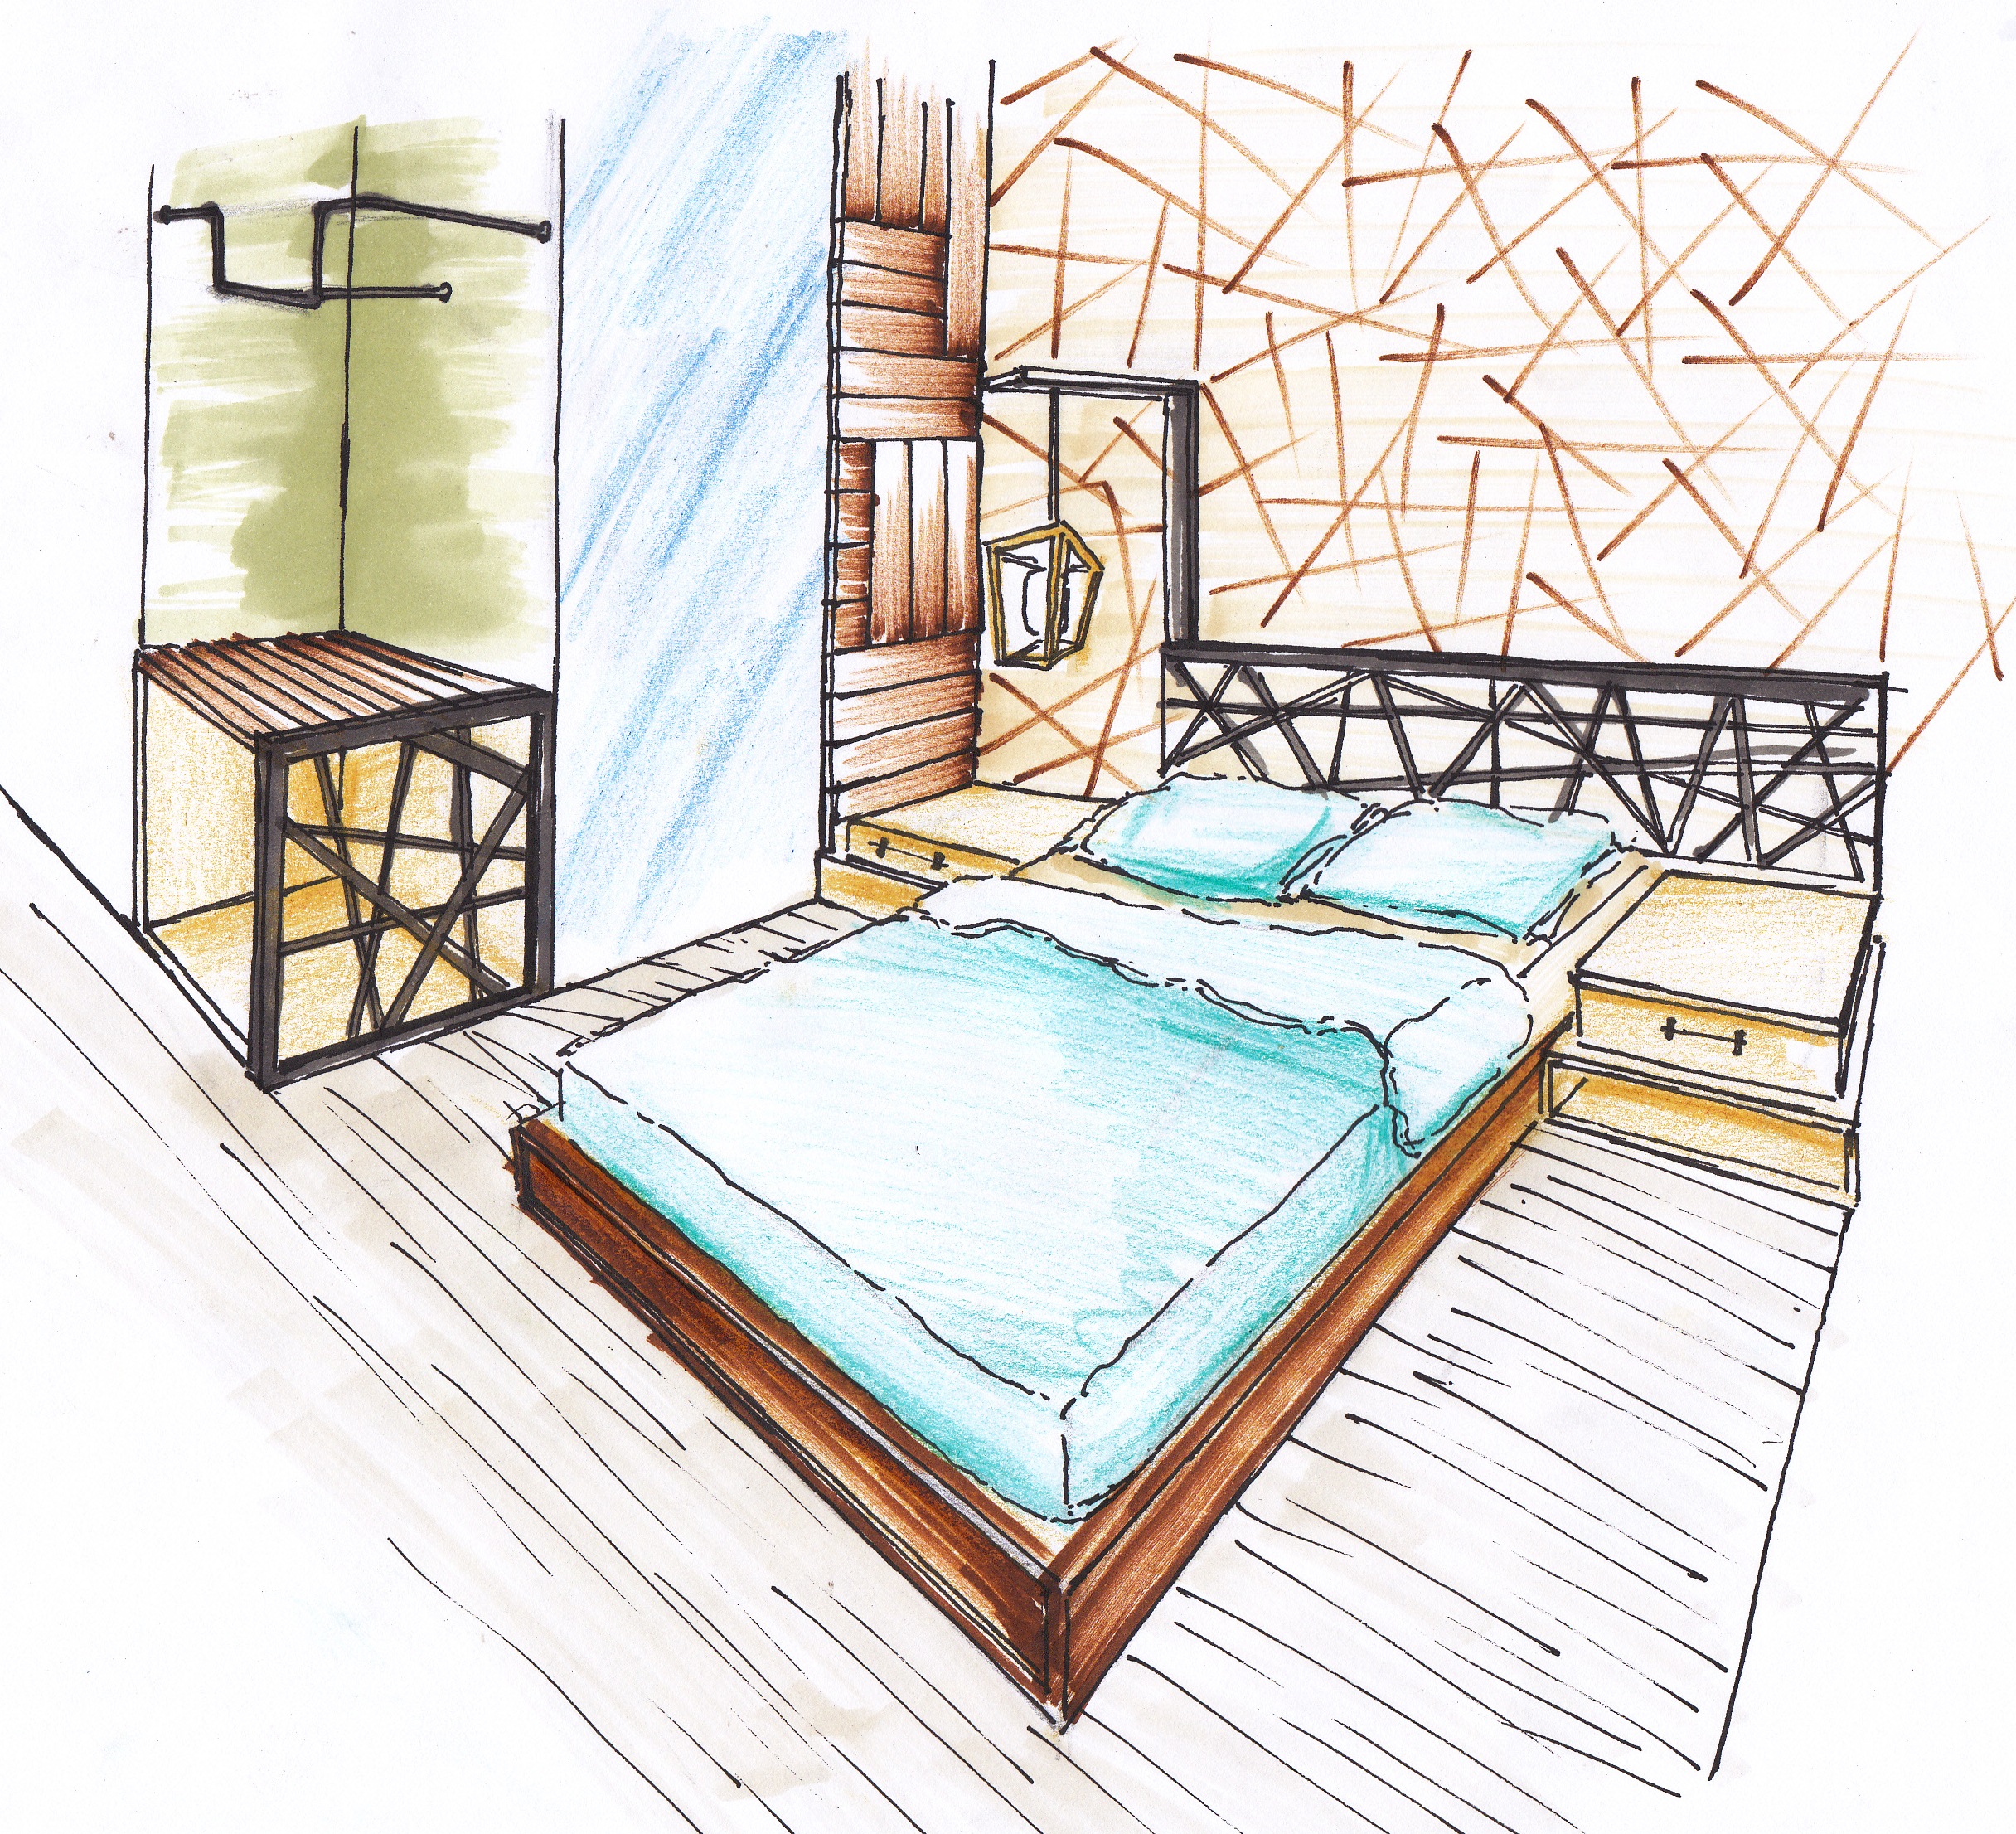 Gambar Sketsa Interior Kamar Tidur Interior Rumah